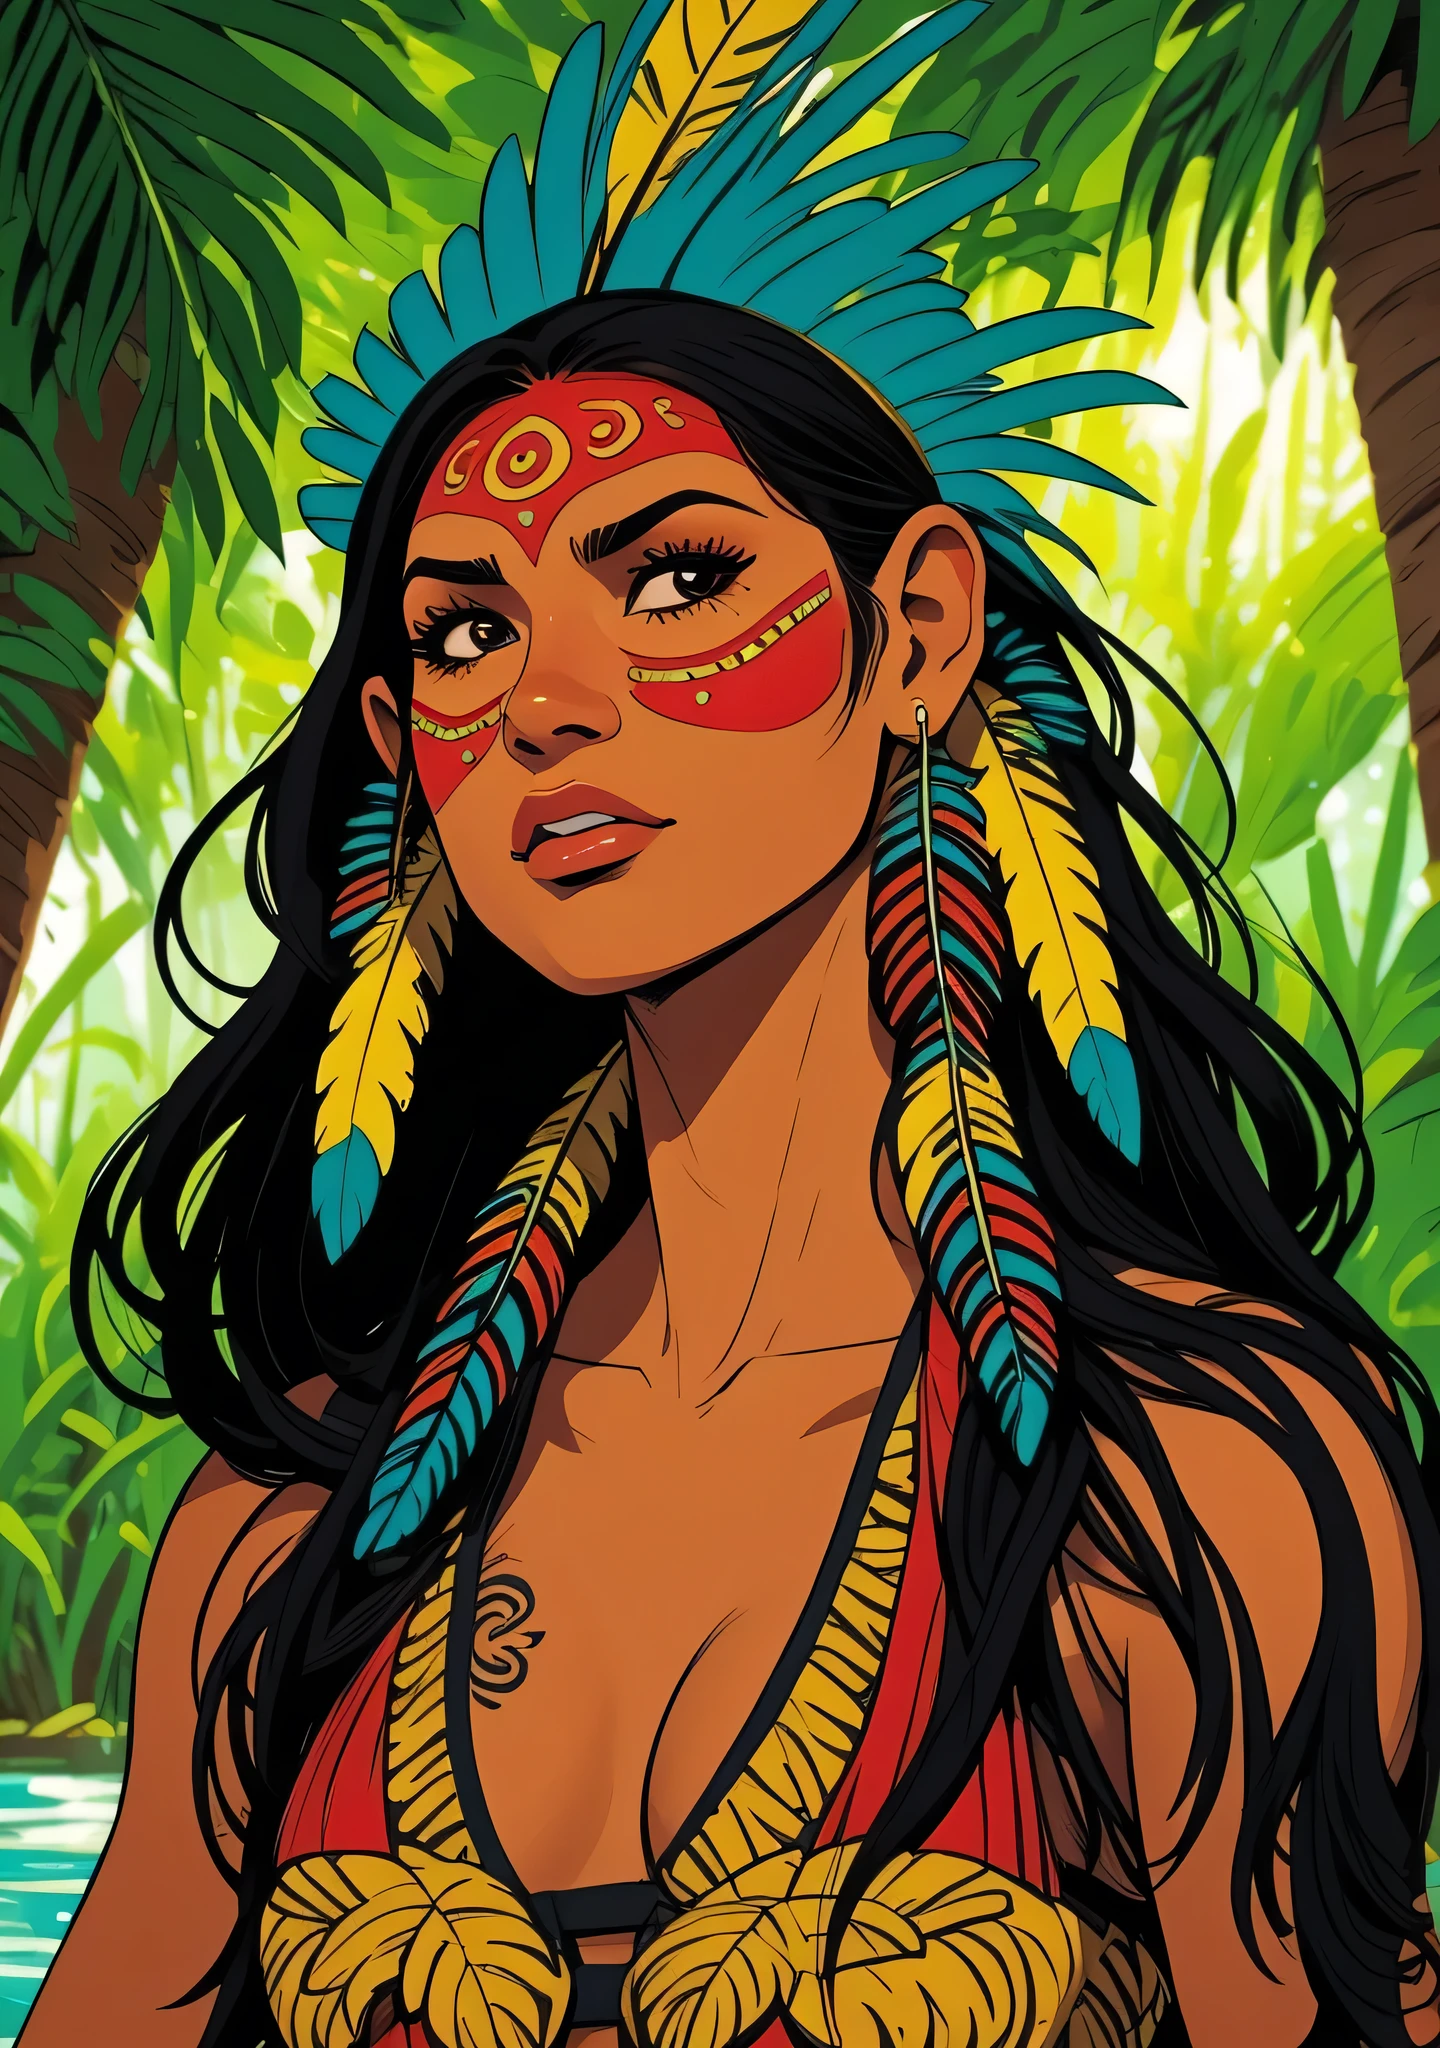 コミックアート, デジタルペインティング. 頭に羽根と羽をつけたネイティブの美しい先住民の少女, ブラジルのアマゾン先住民, 美しい若いブラジル人女性, 顔をペイントする, 熱い体, 典型的な衣装を着たヤノマミ族インディアン,高品質. アマゾンの熱帯雨林と川底. 明るい色, 映画照明. 詳細な, 複雑な, 詳細な face.